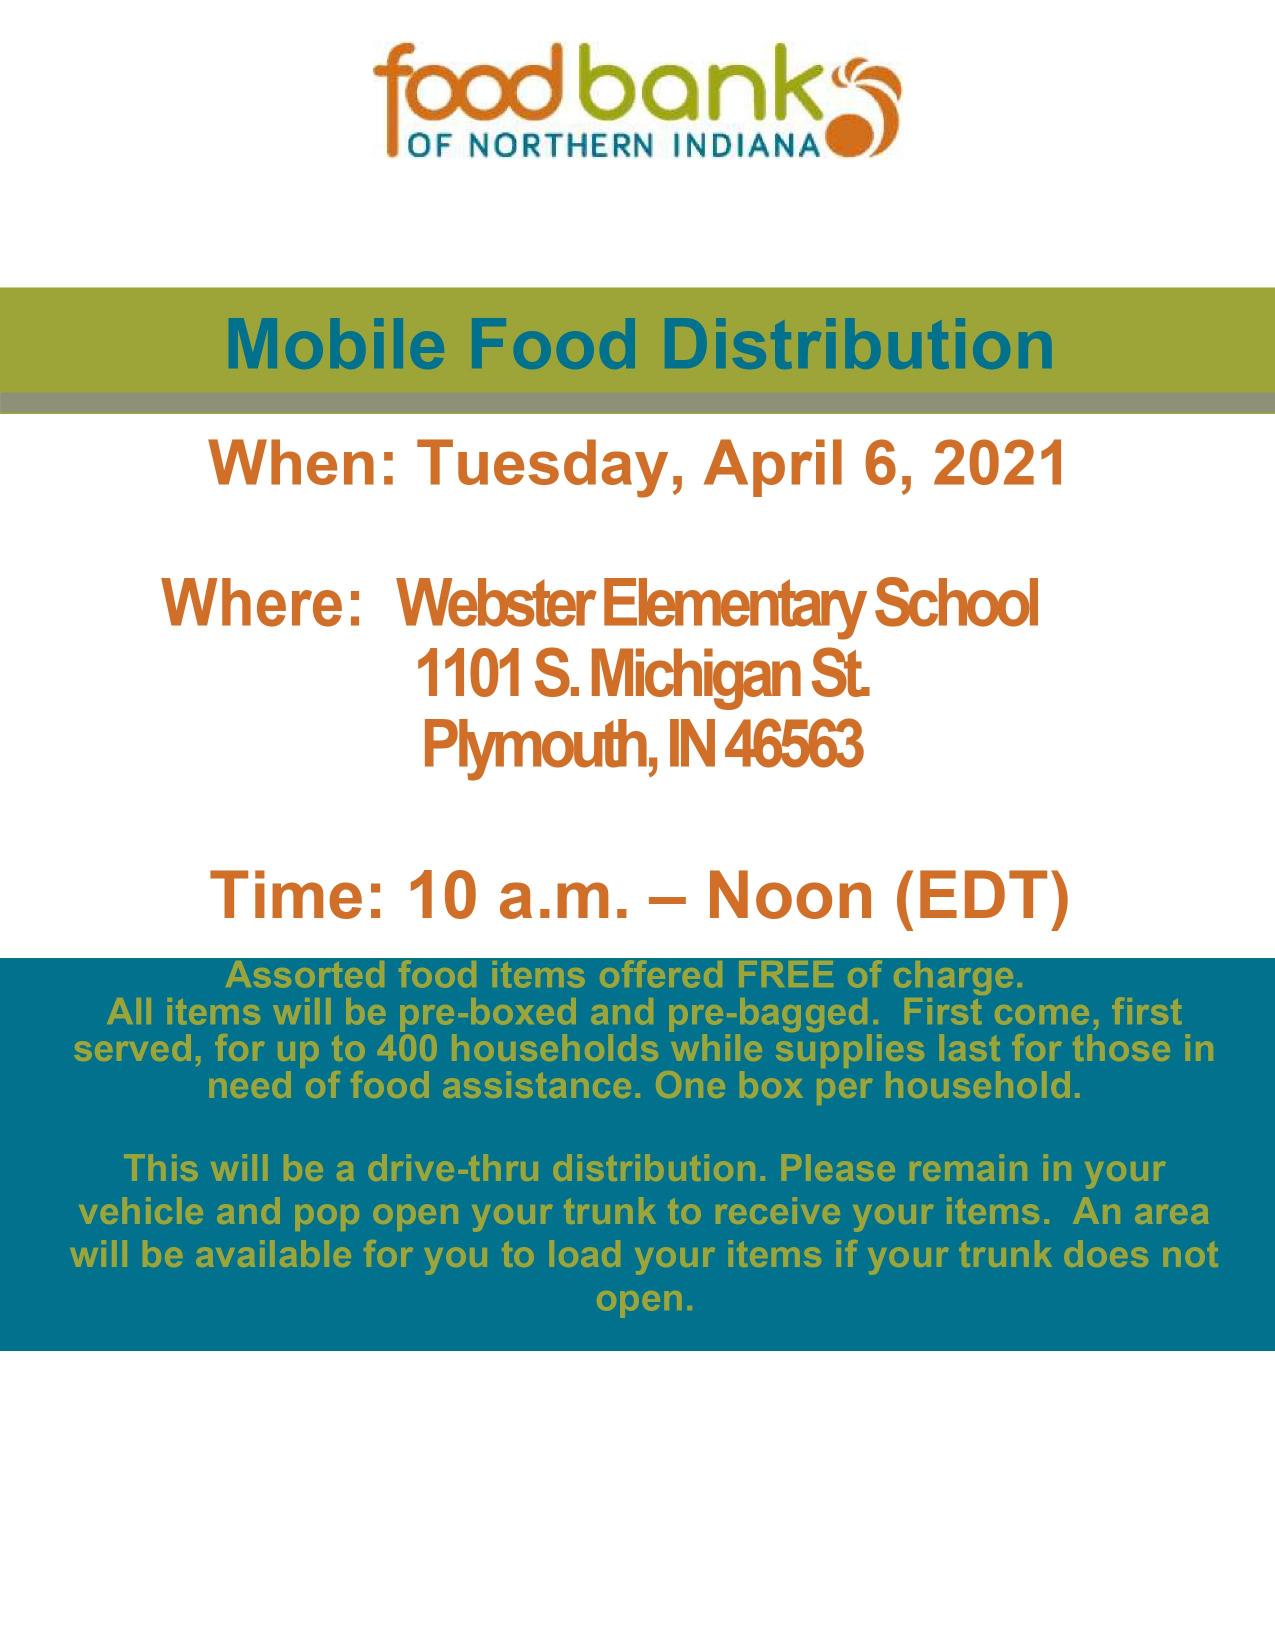 Mobile Food Distribution 4.6